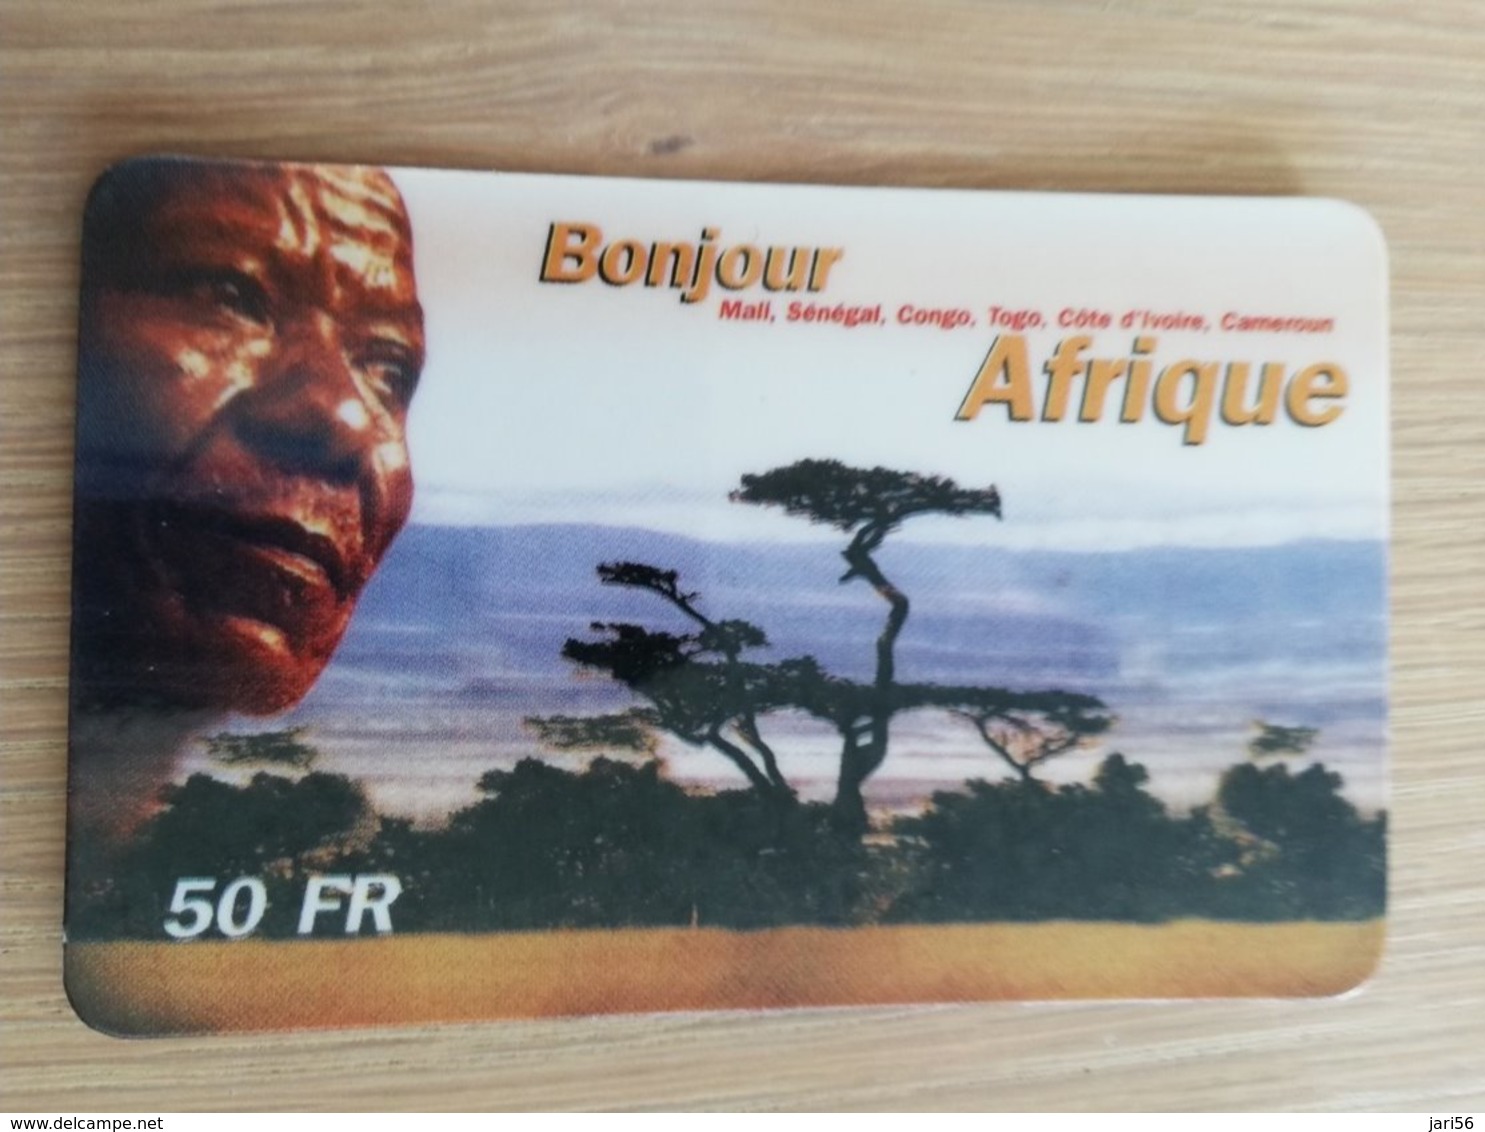 FRANCE/FRANKRIJK  50 FF BONJOUR AFRIQUE    PREPAID  USED    ** 1464** - Mobicartes (GSM/SIM)